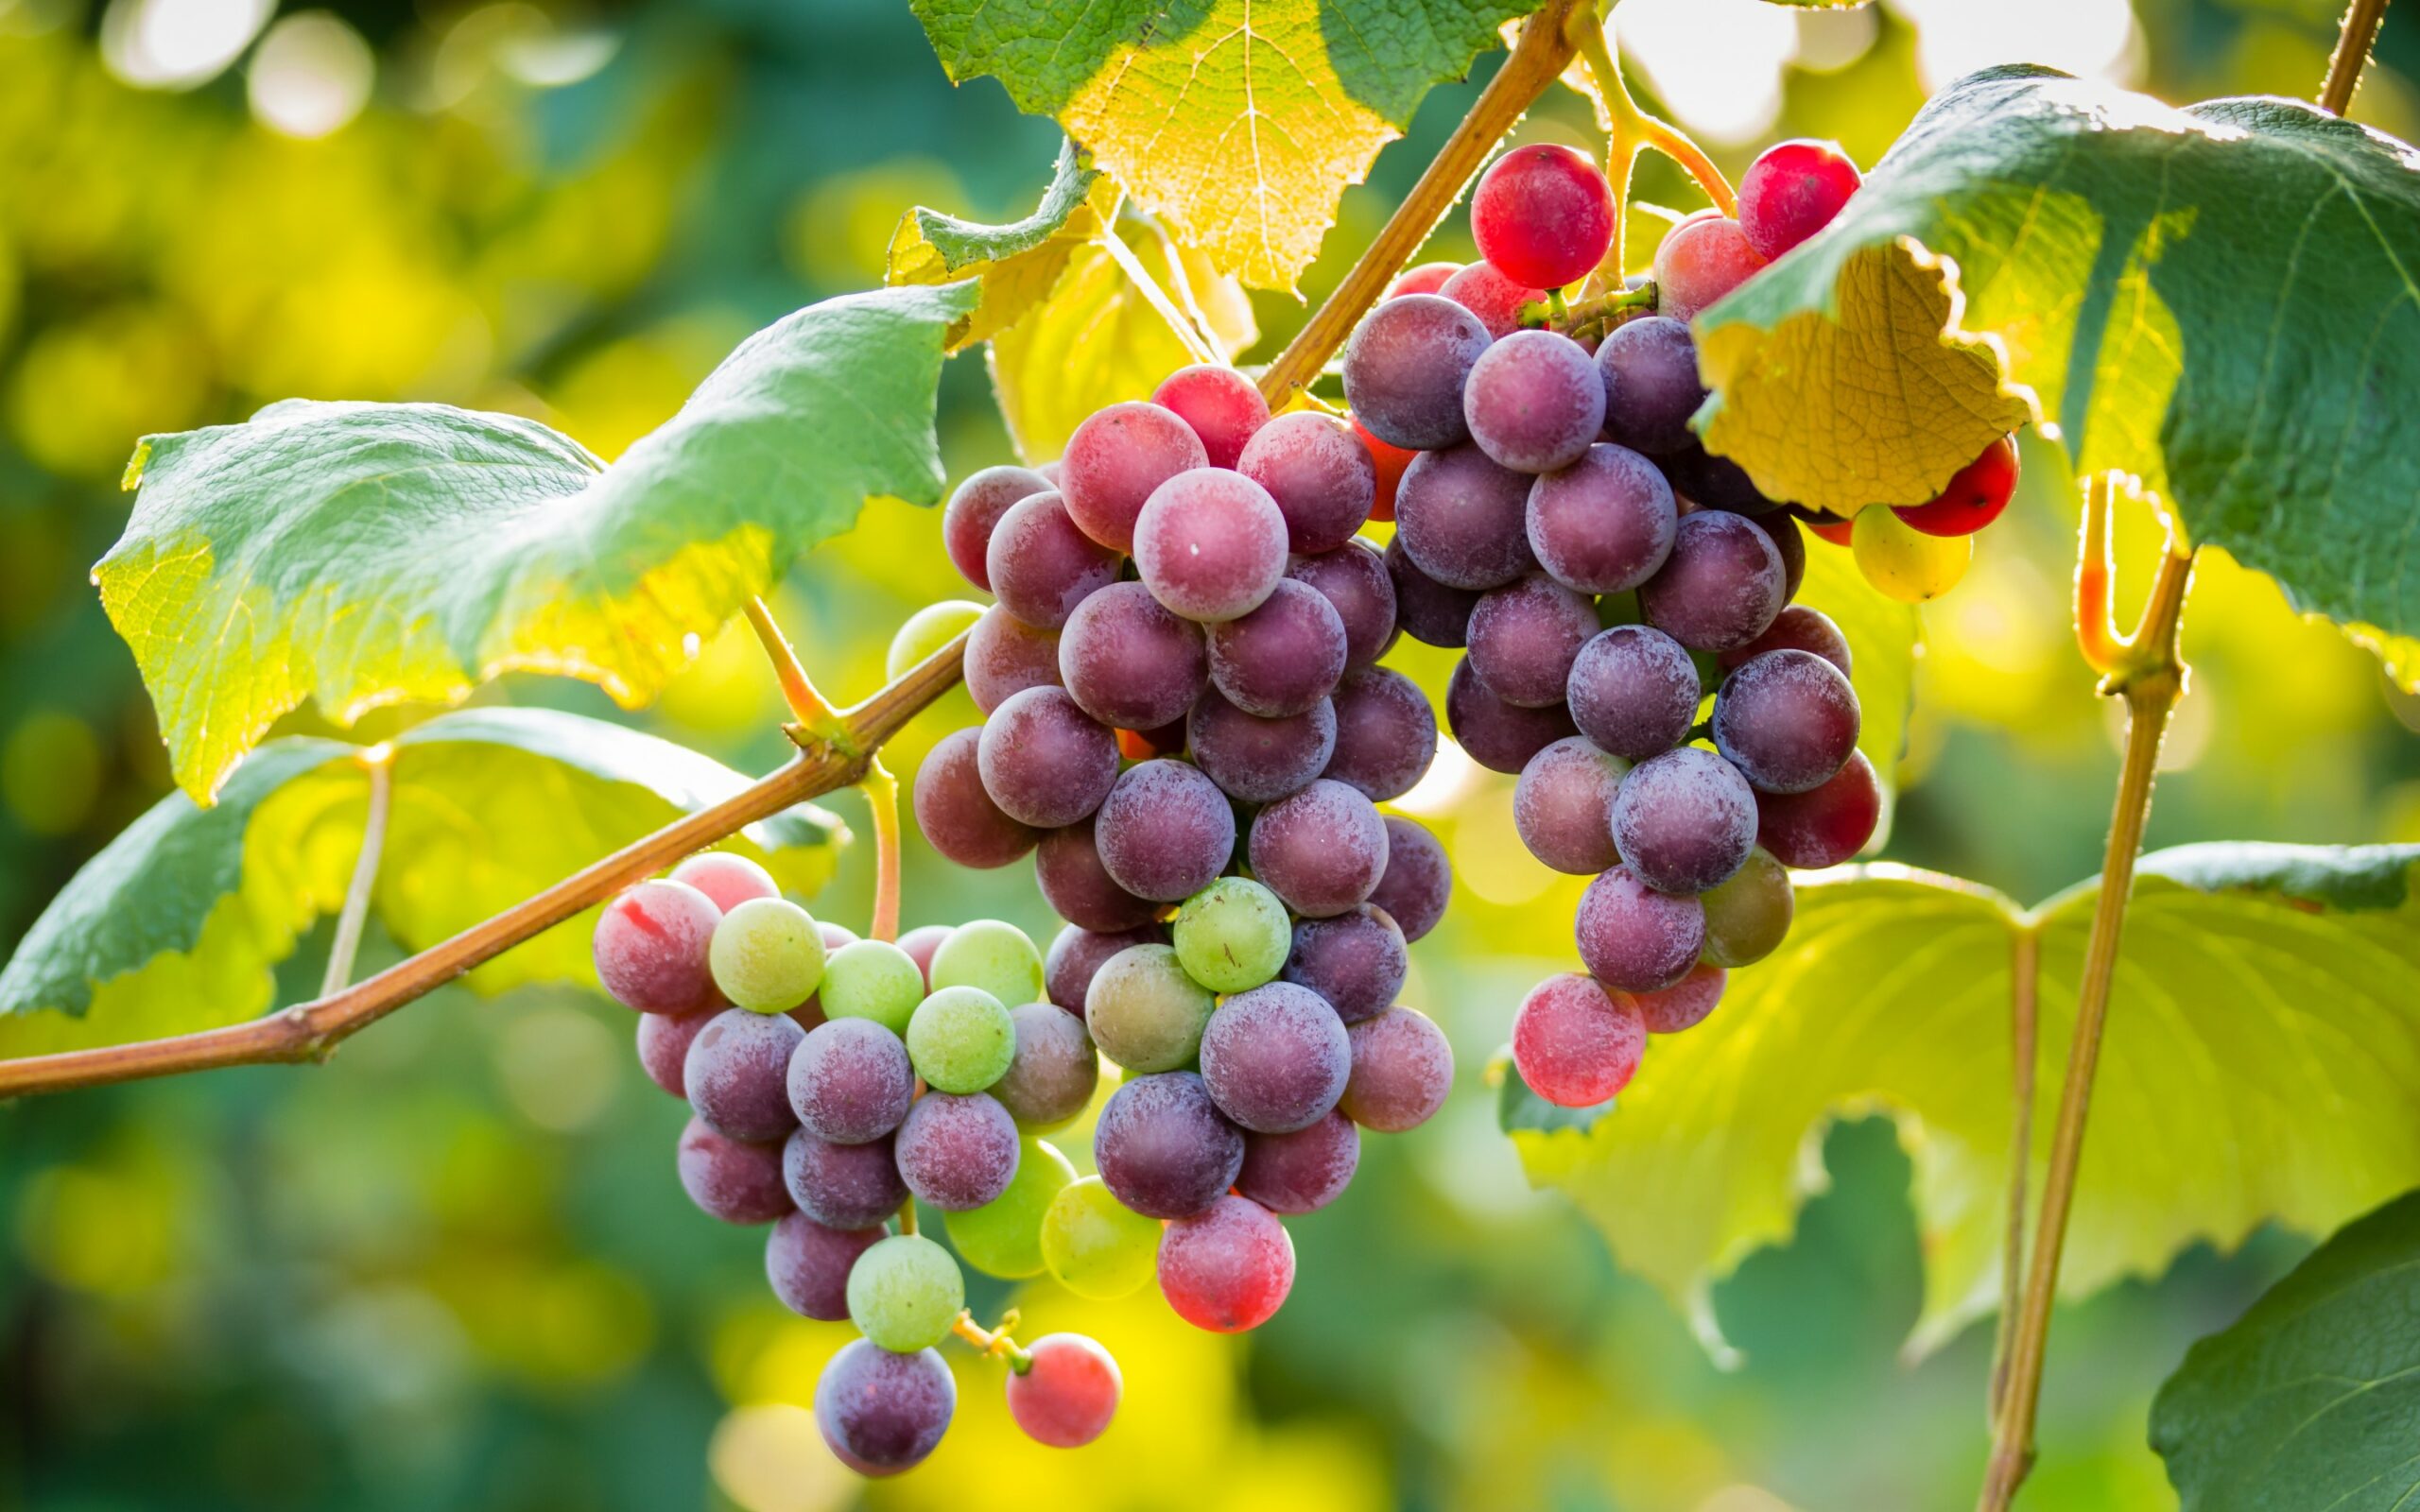 gambar buah anggur segar hd